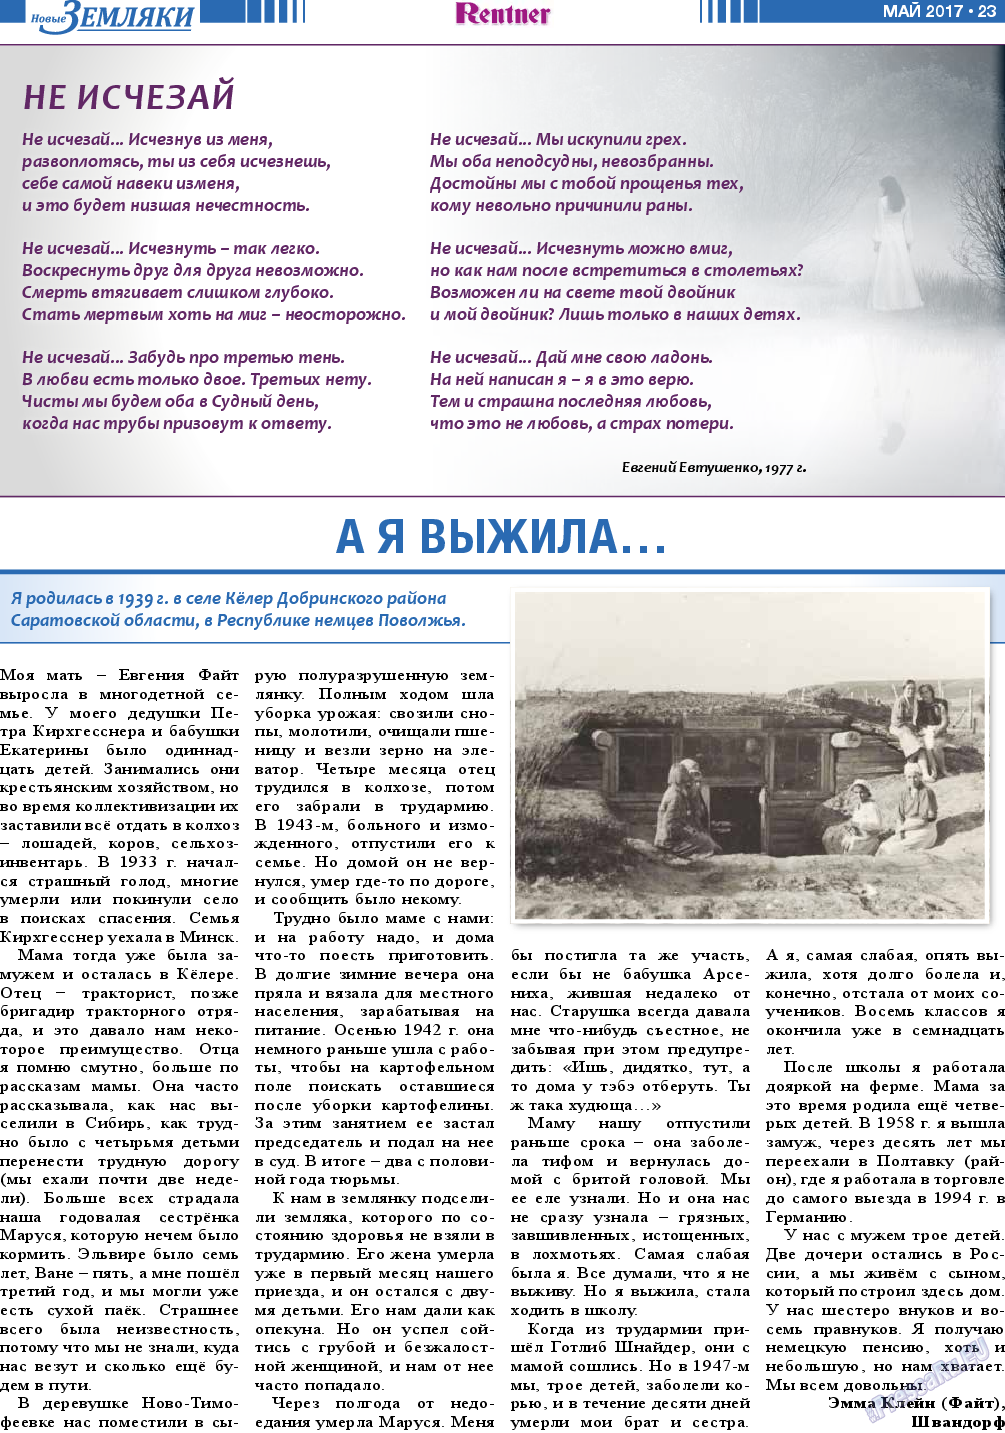 Новые Земляки (газета). 2017 год, номер 5, стр. 23